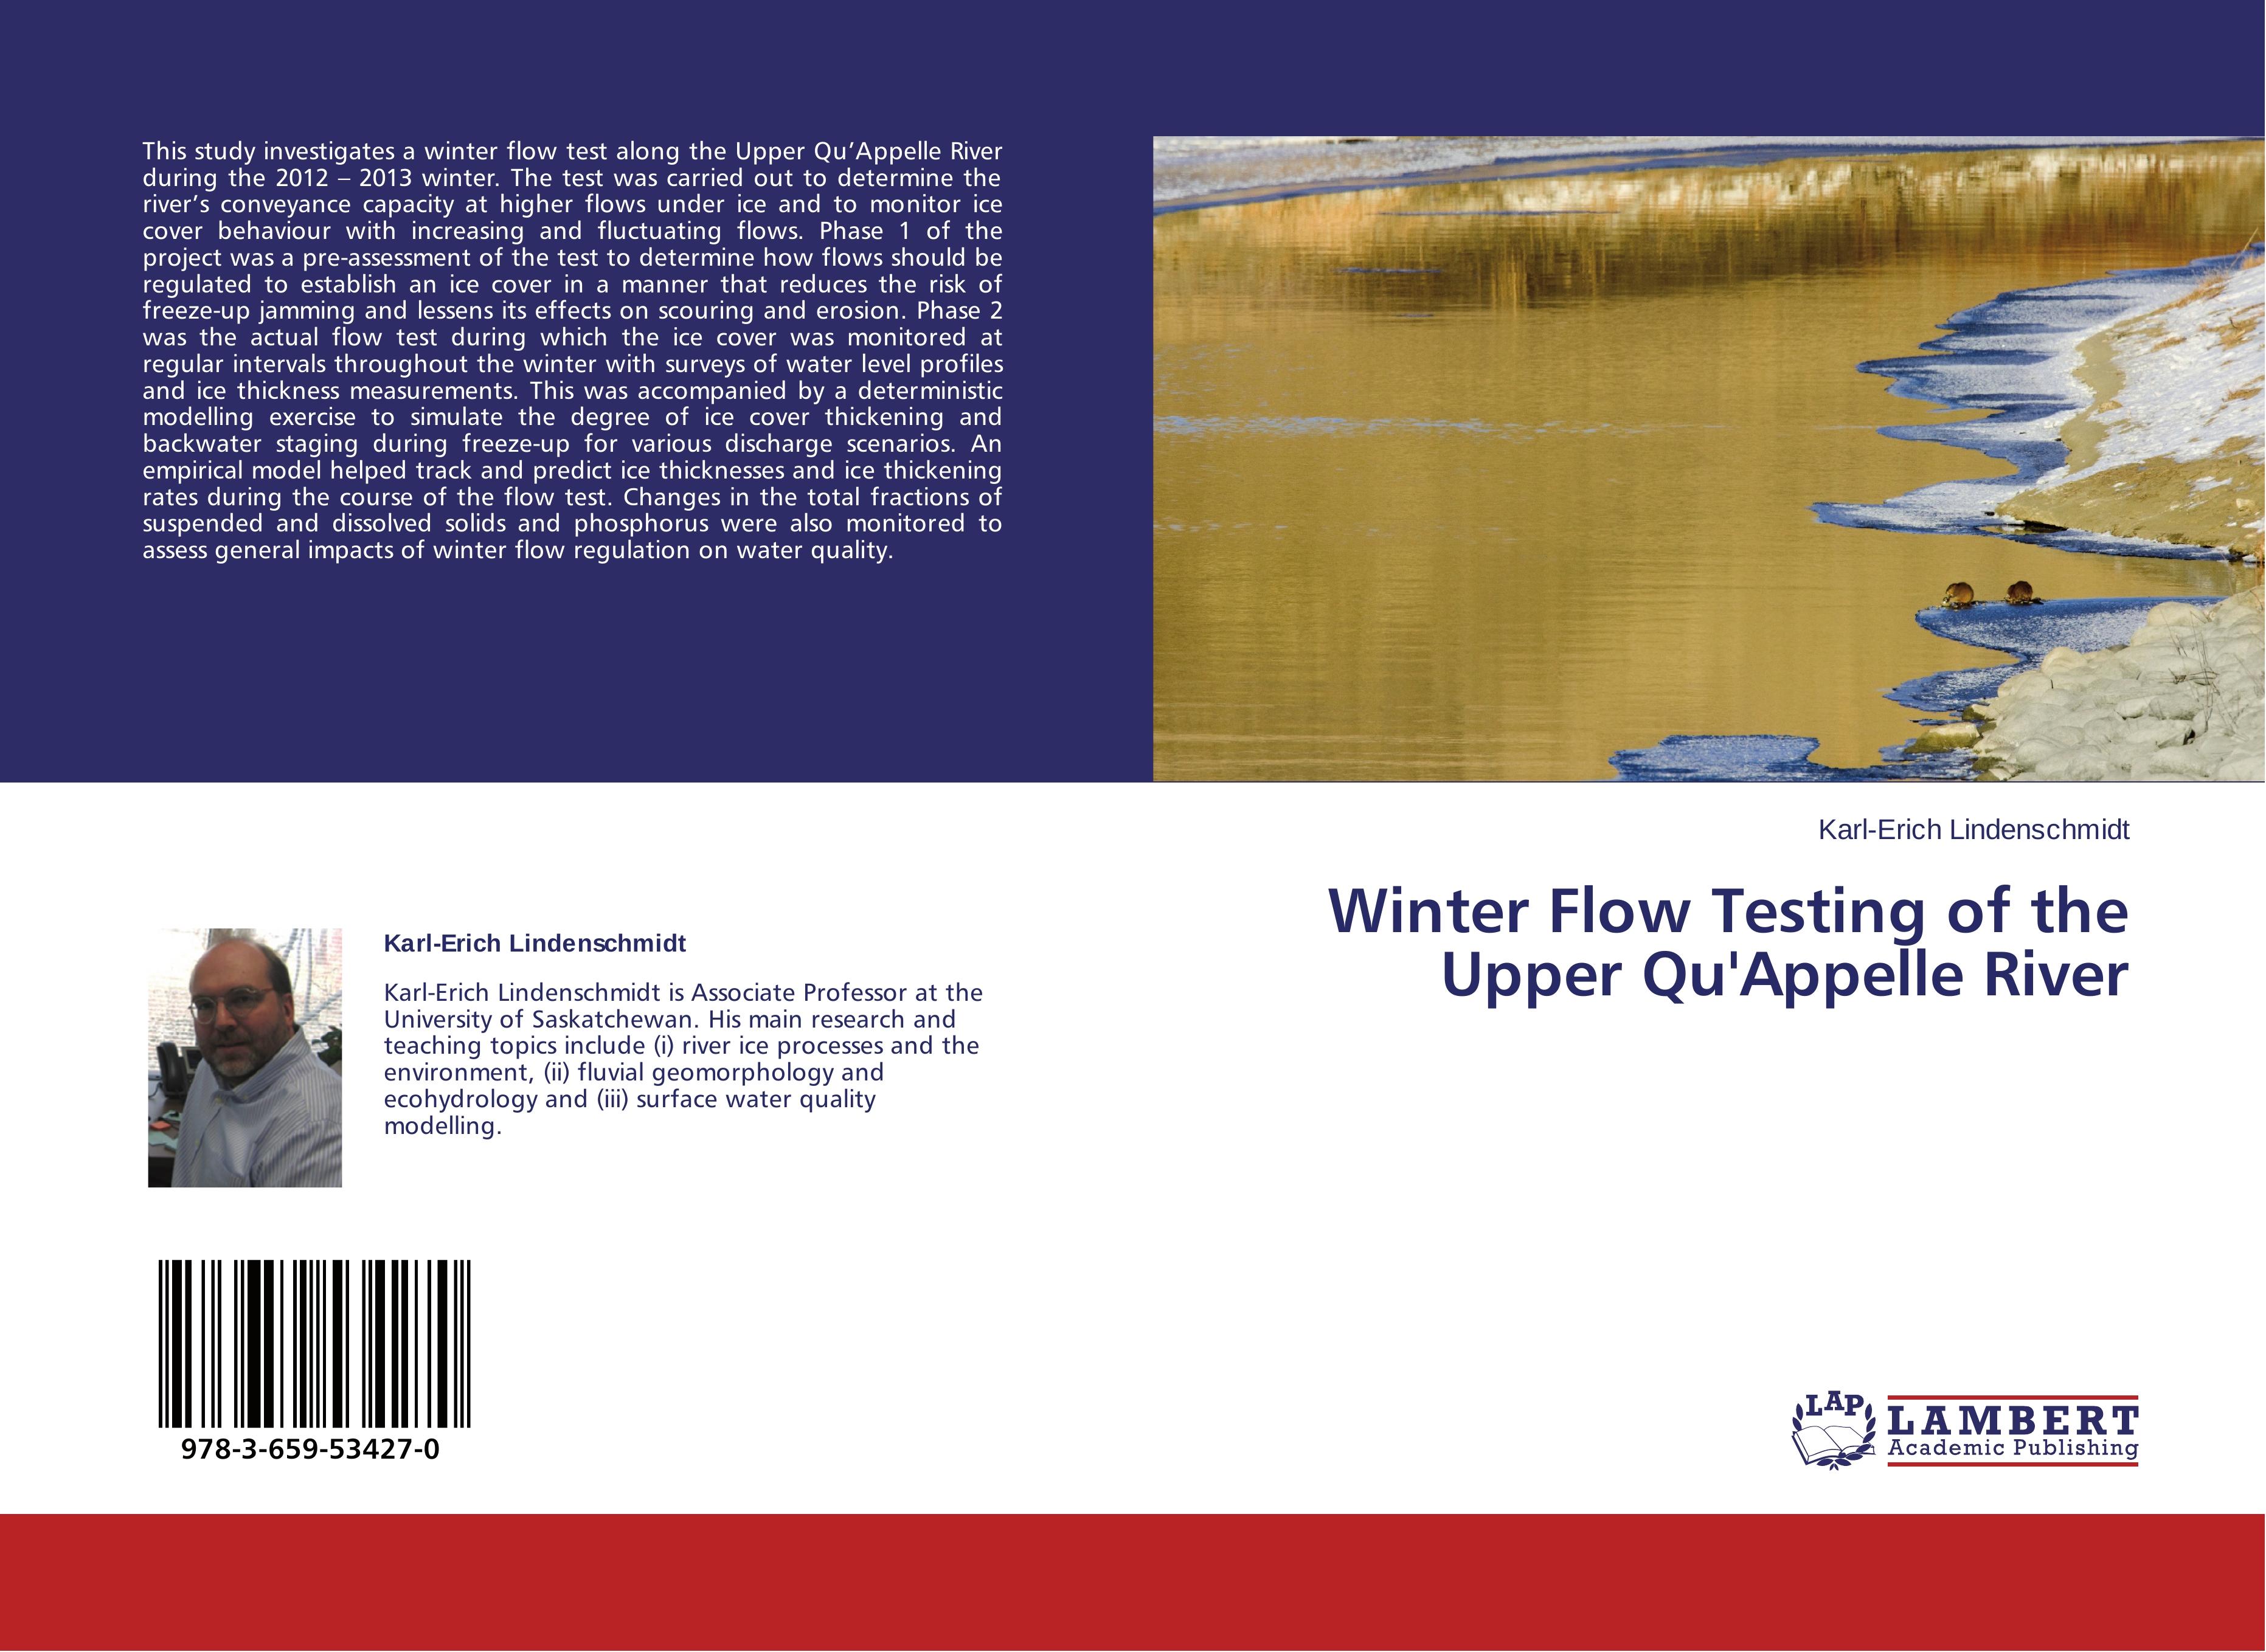 Winter Flow Testing of the Upper Qu'Appelle River - Lindenschmidt, Karl-Erich